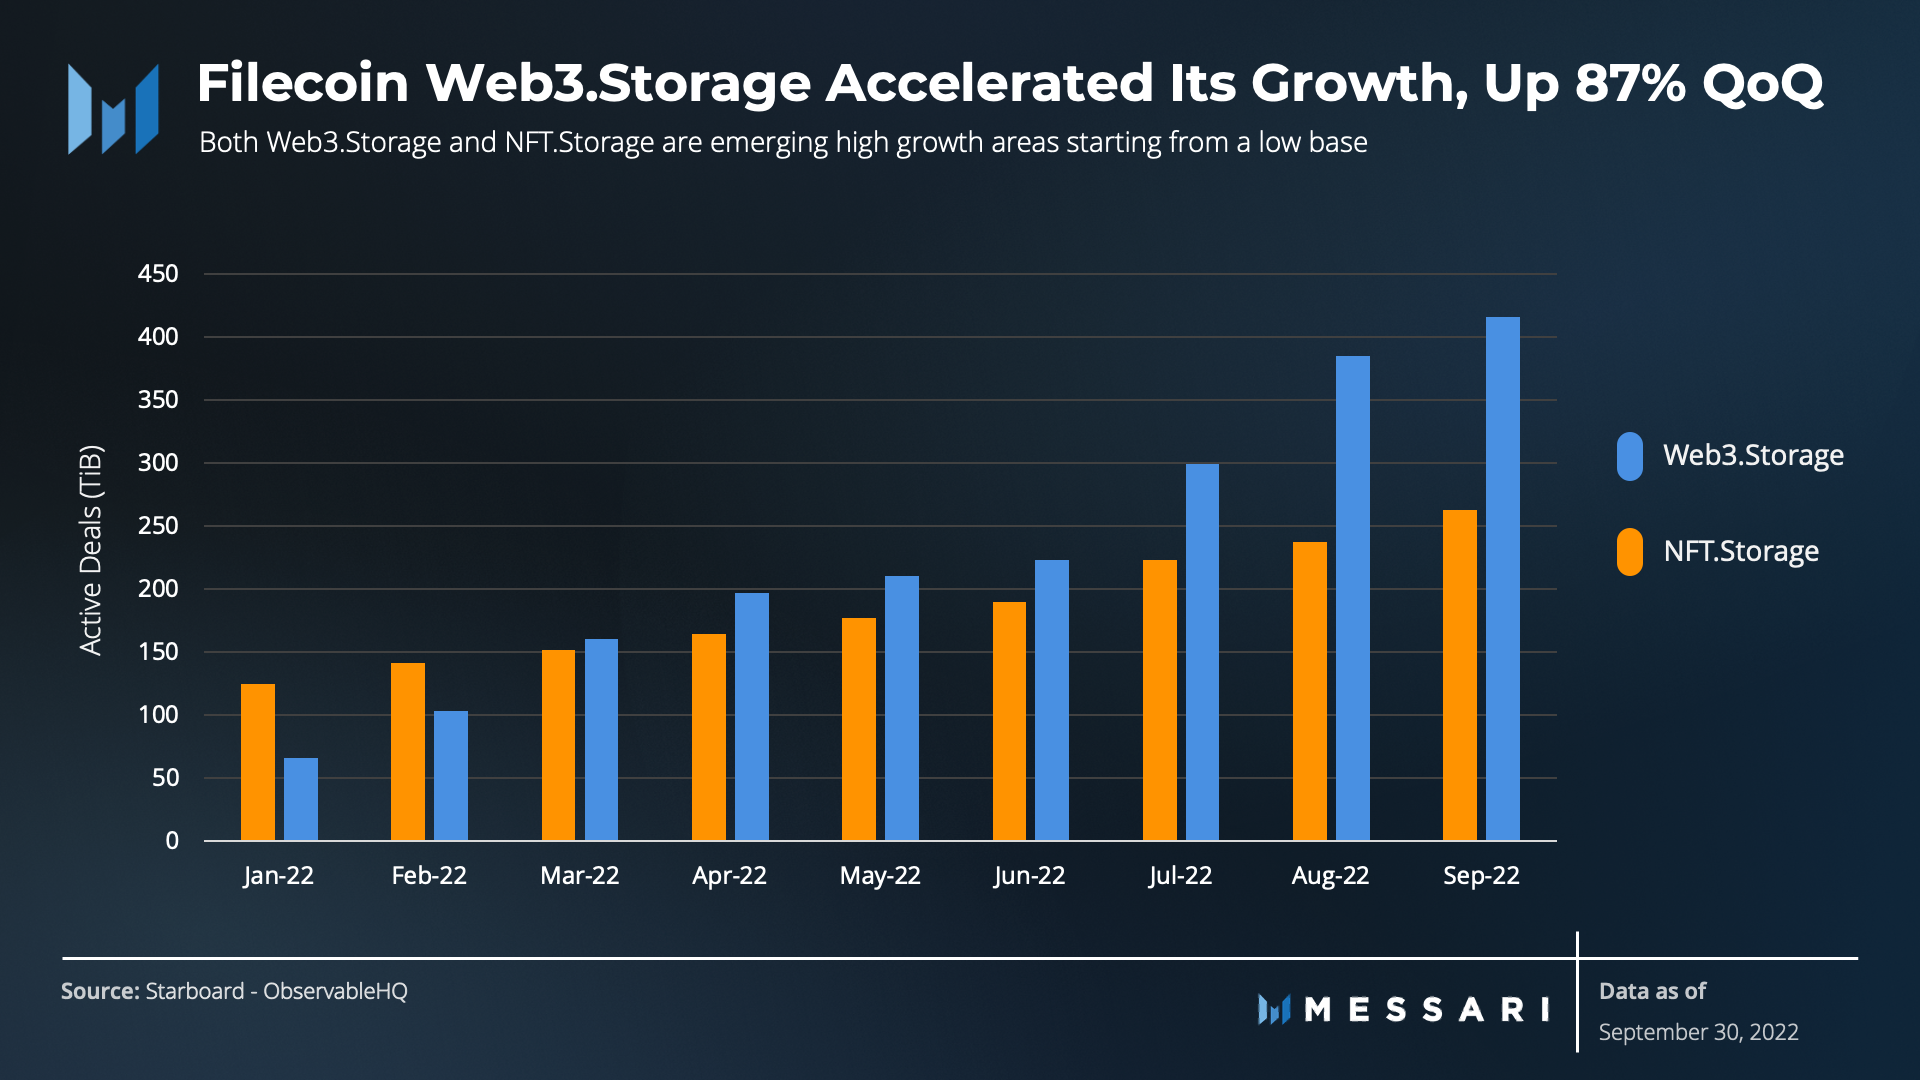 tăng trưởng web3.storage qua quý